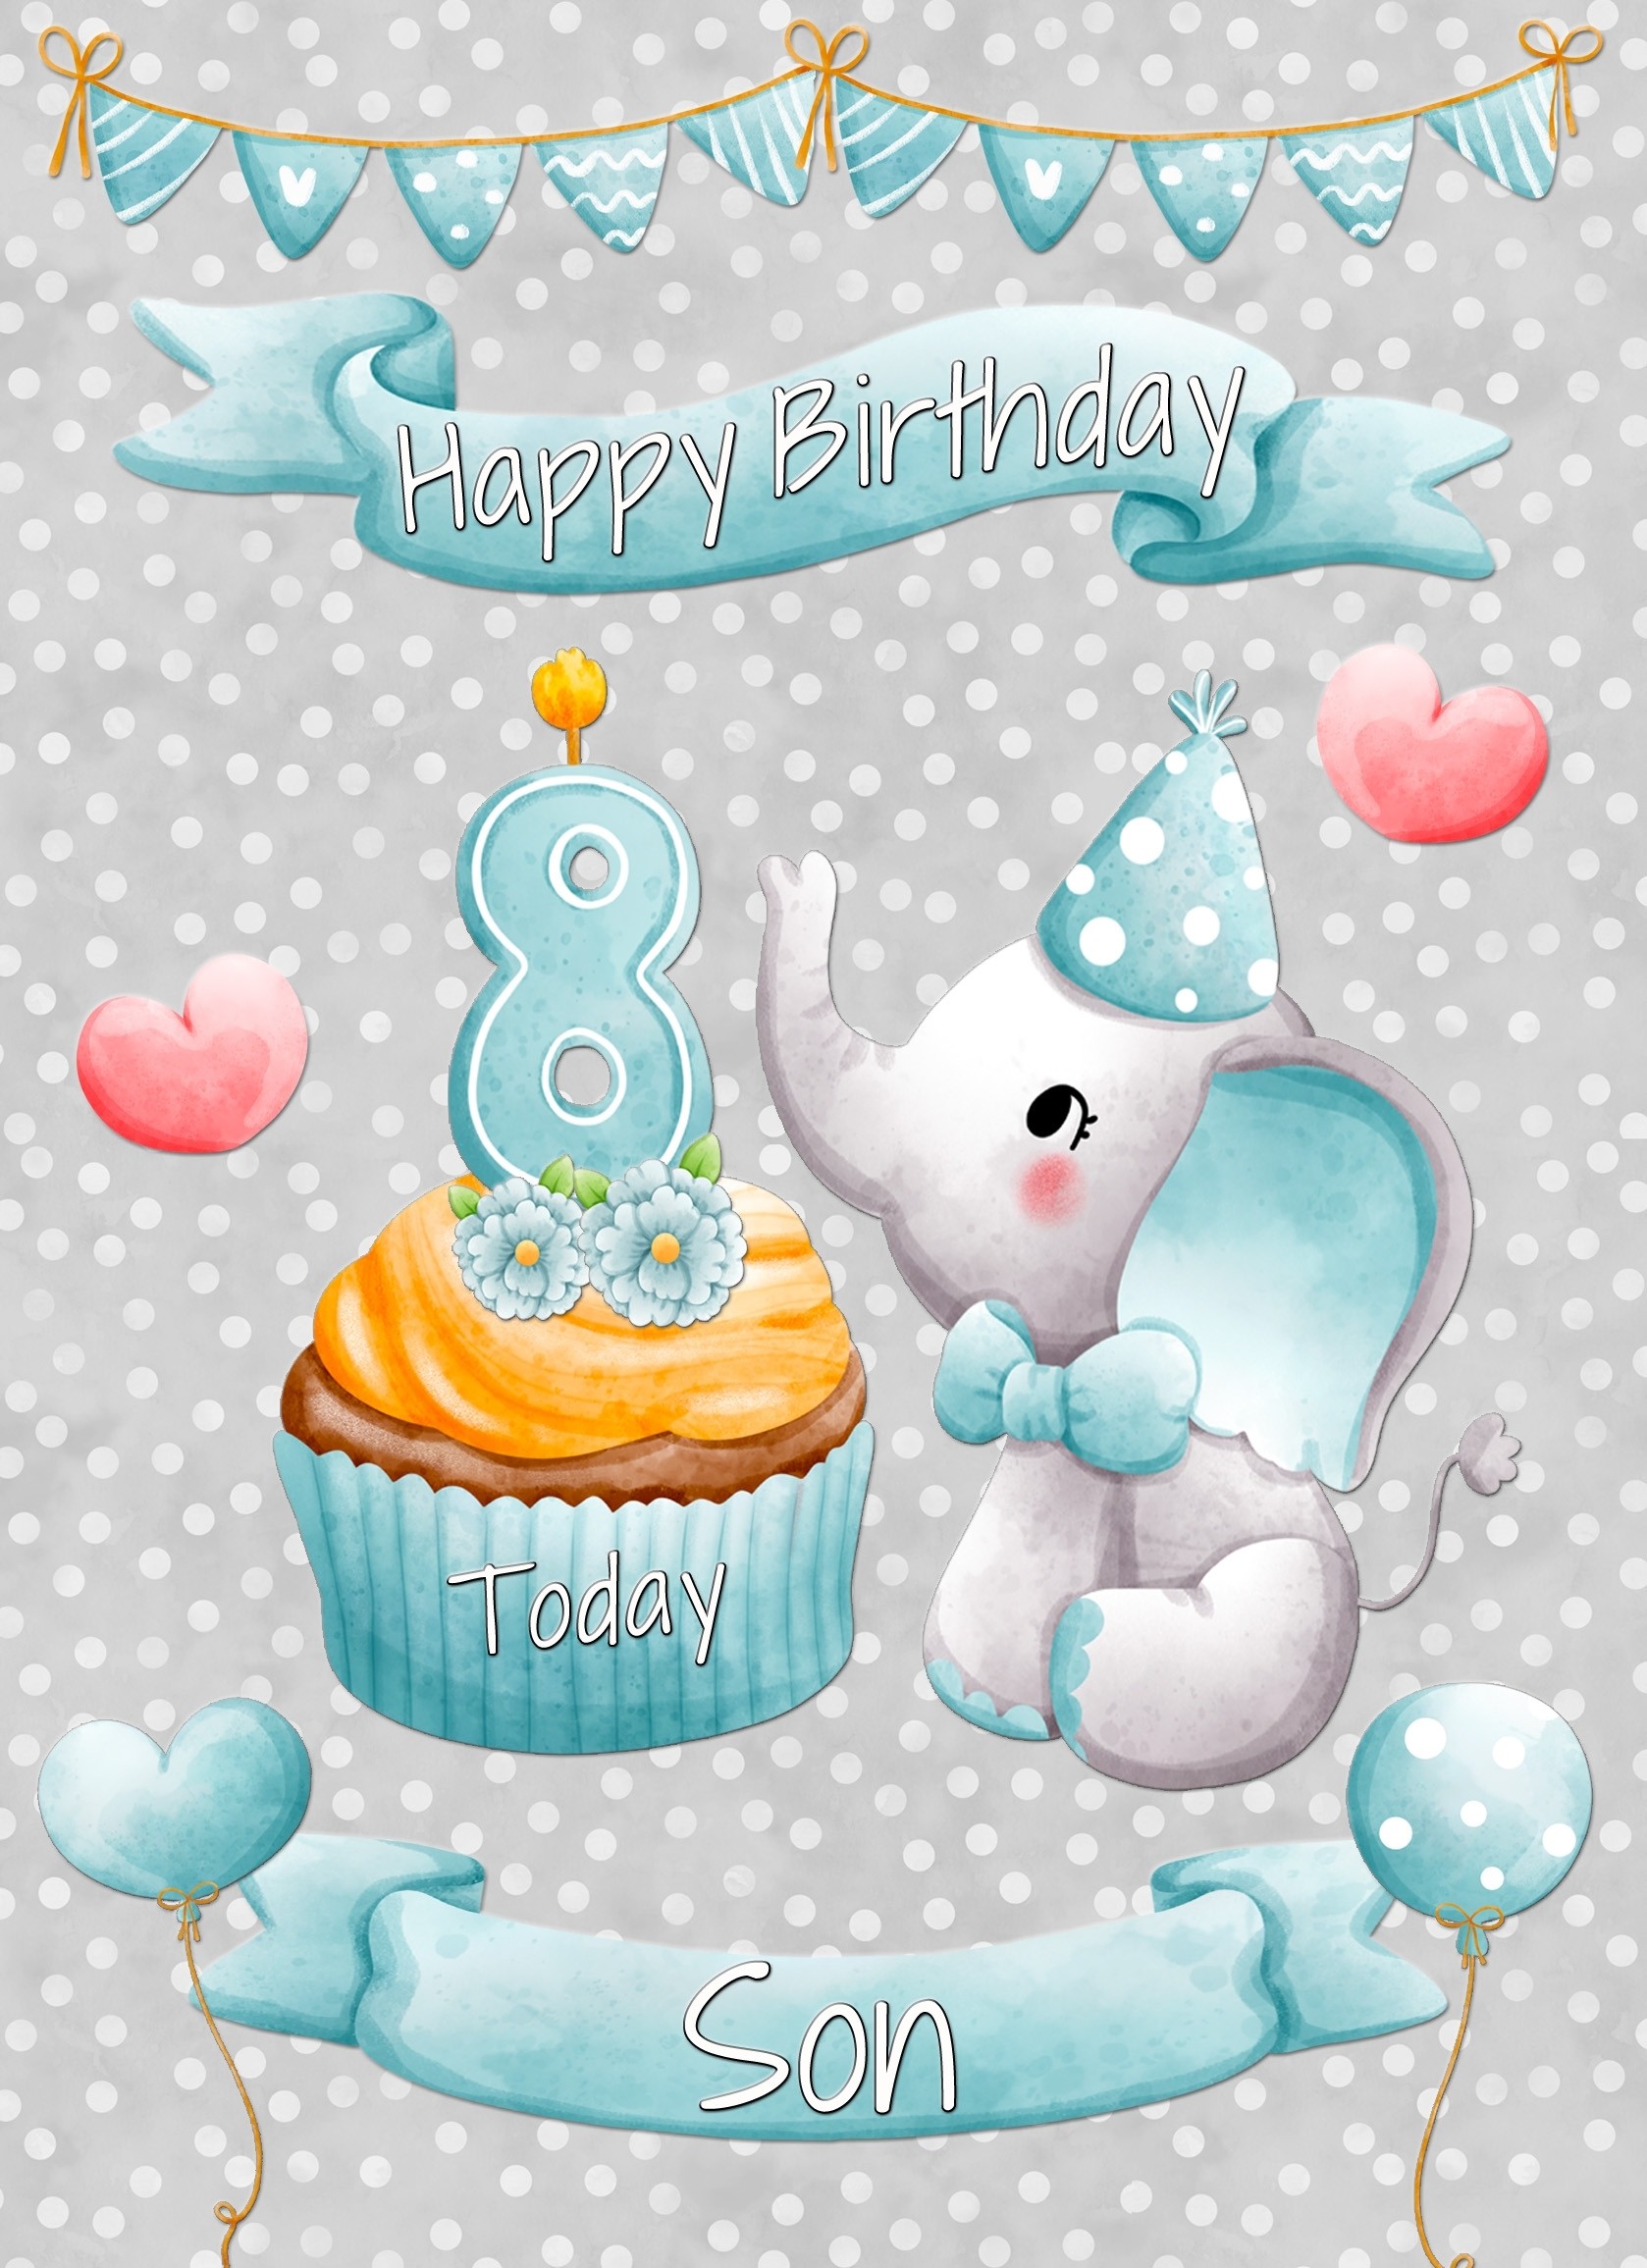 Son 8th Birthday Card (Grey Elephant)